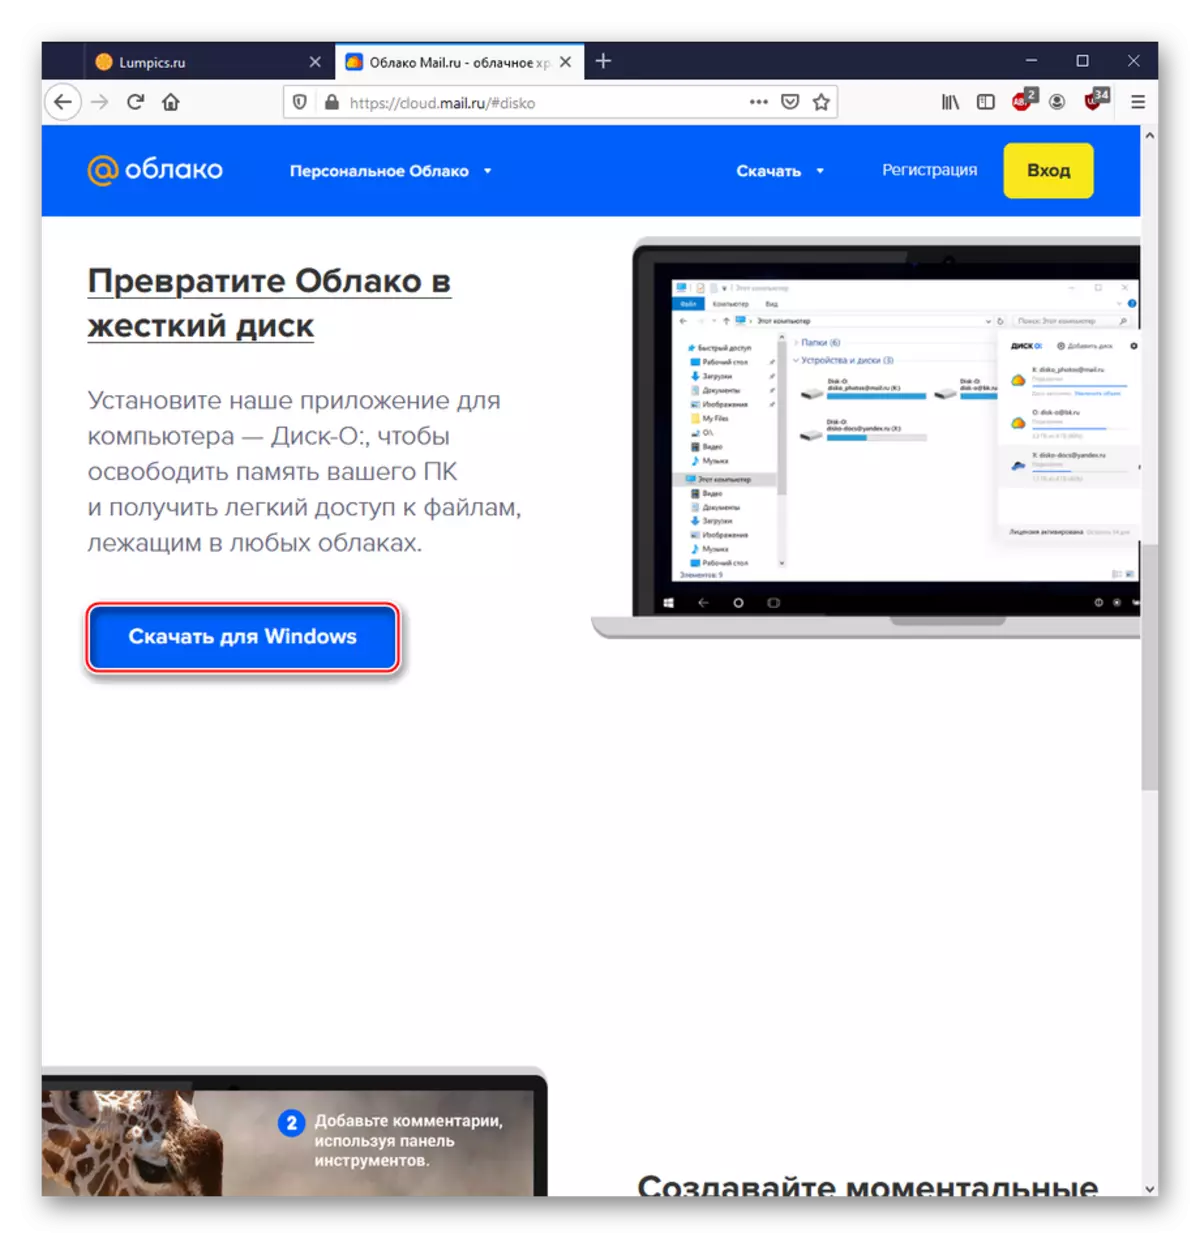 Pobieranie programu PC do pracy z usługą cloud@mail.ru